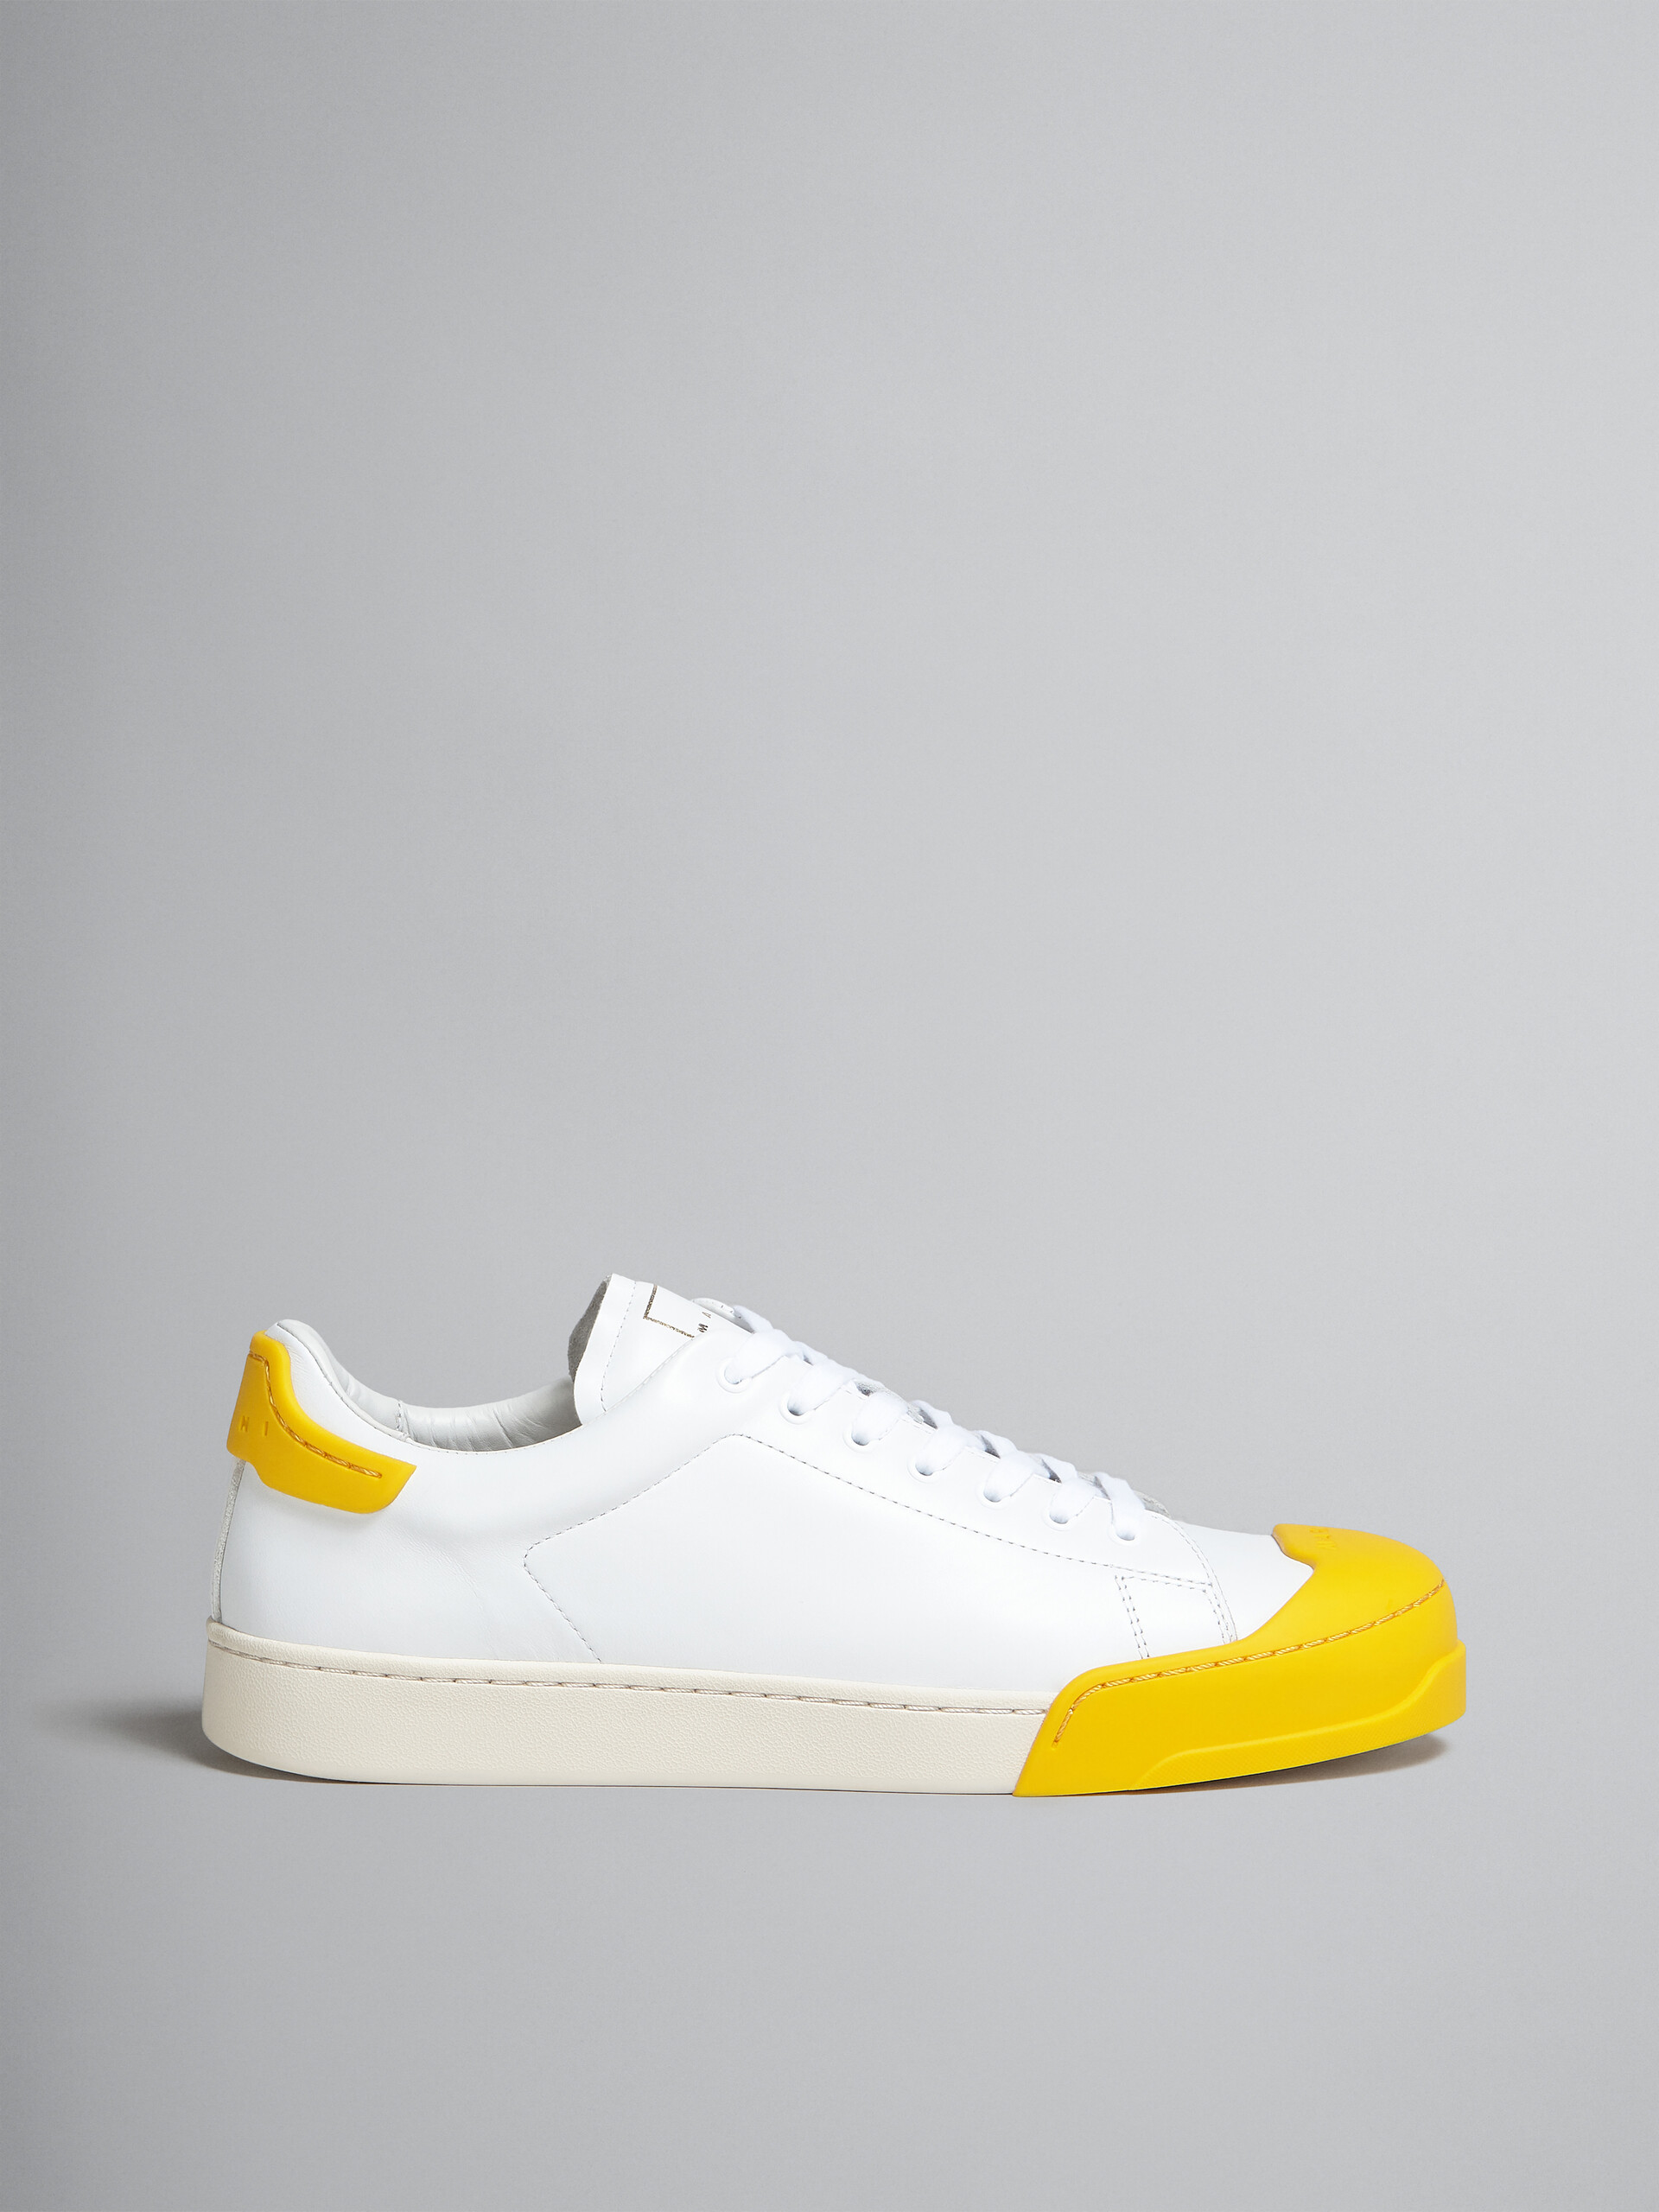 Sneaker Dada Bumper in pelle bianca e gialla - Sneakers - Image 1